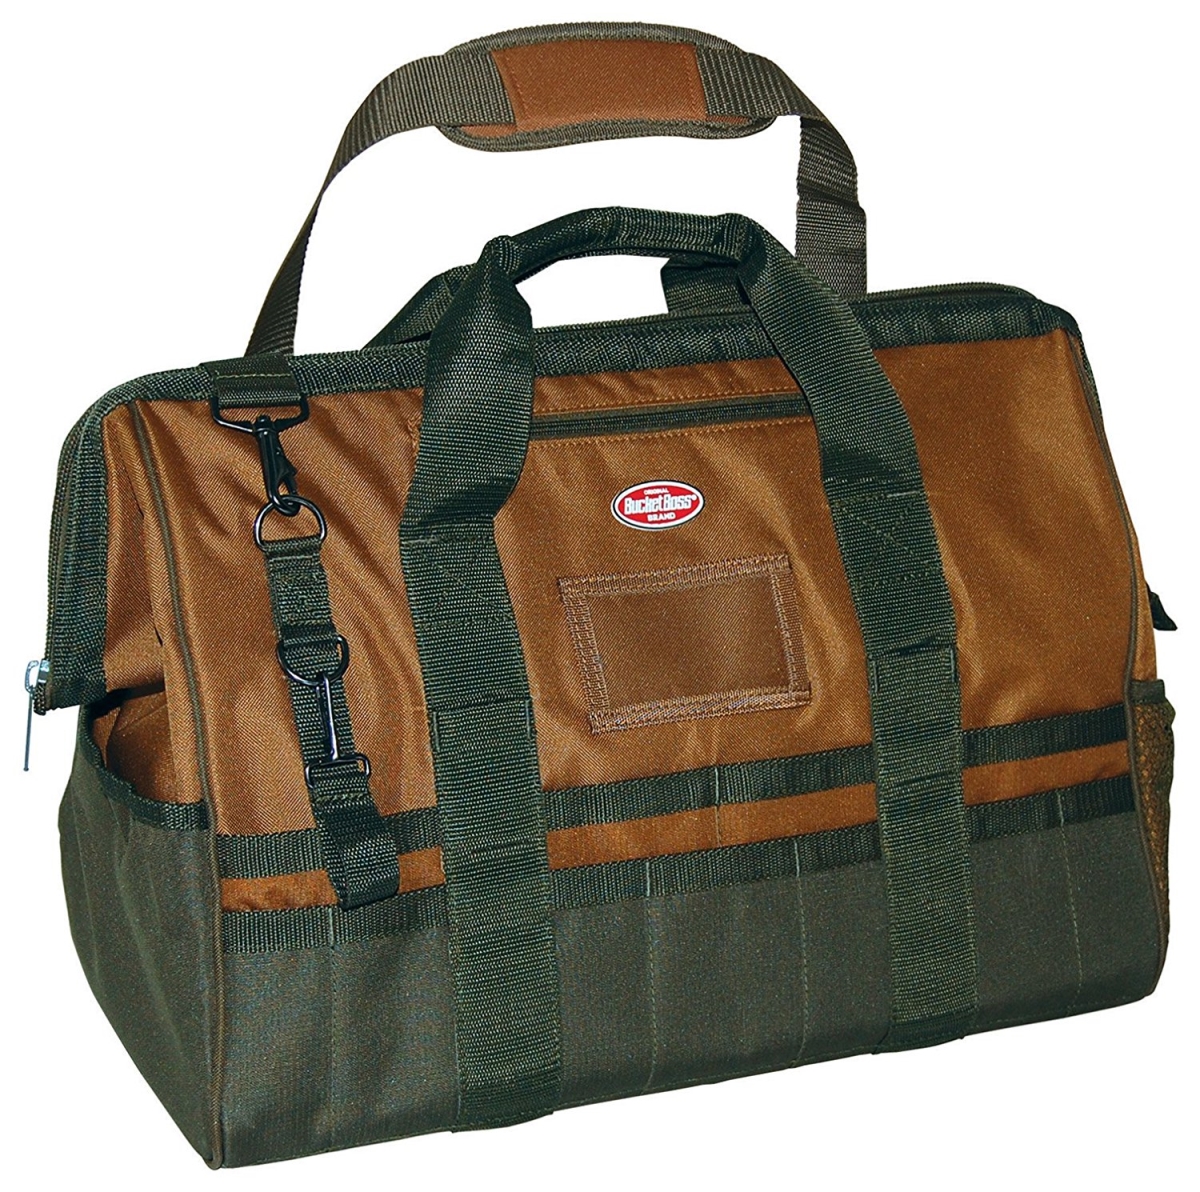 453-60020 20 In. Gatemouth Tool Bag